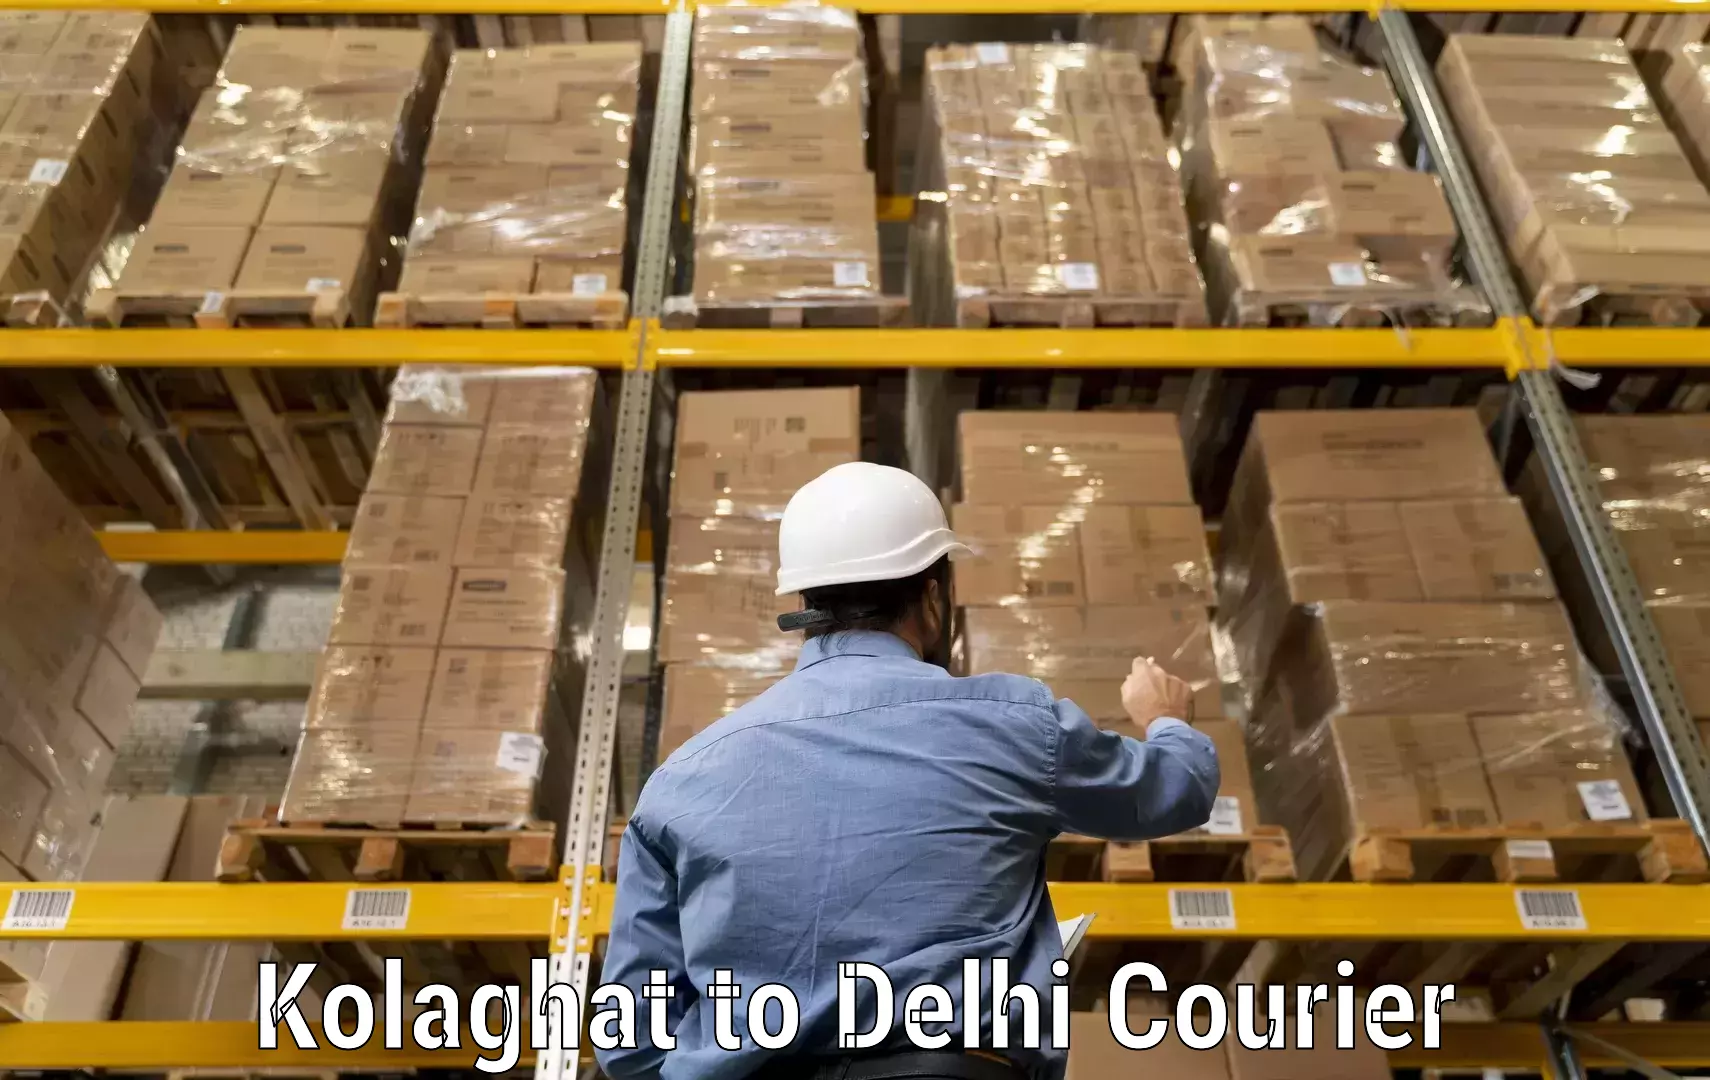 Flexible parcel services Kolaghat to Delhi